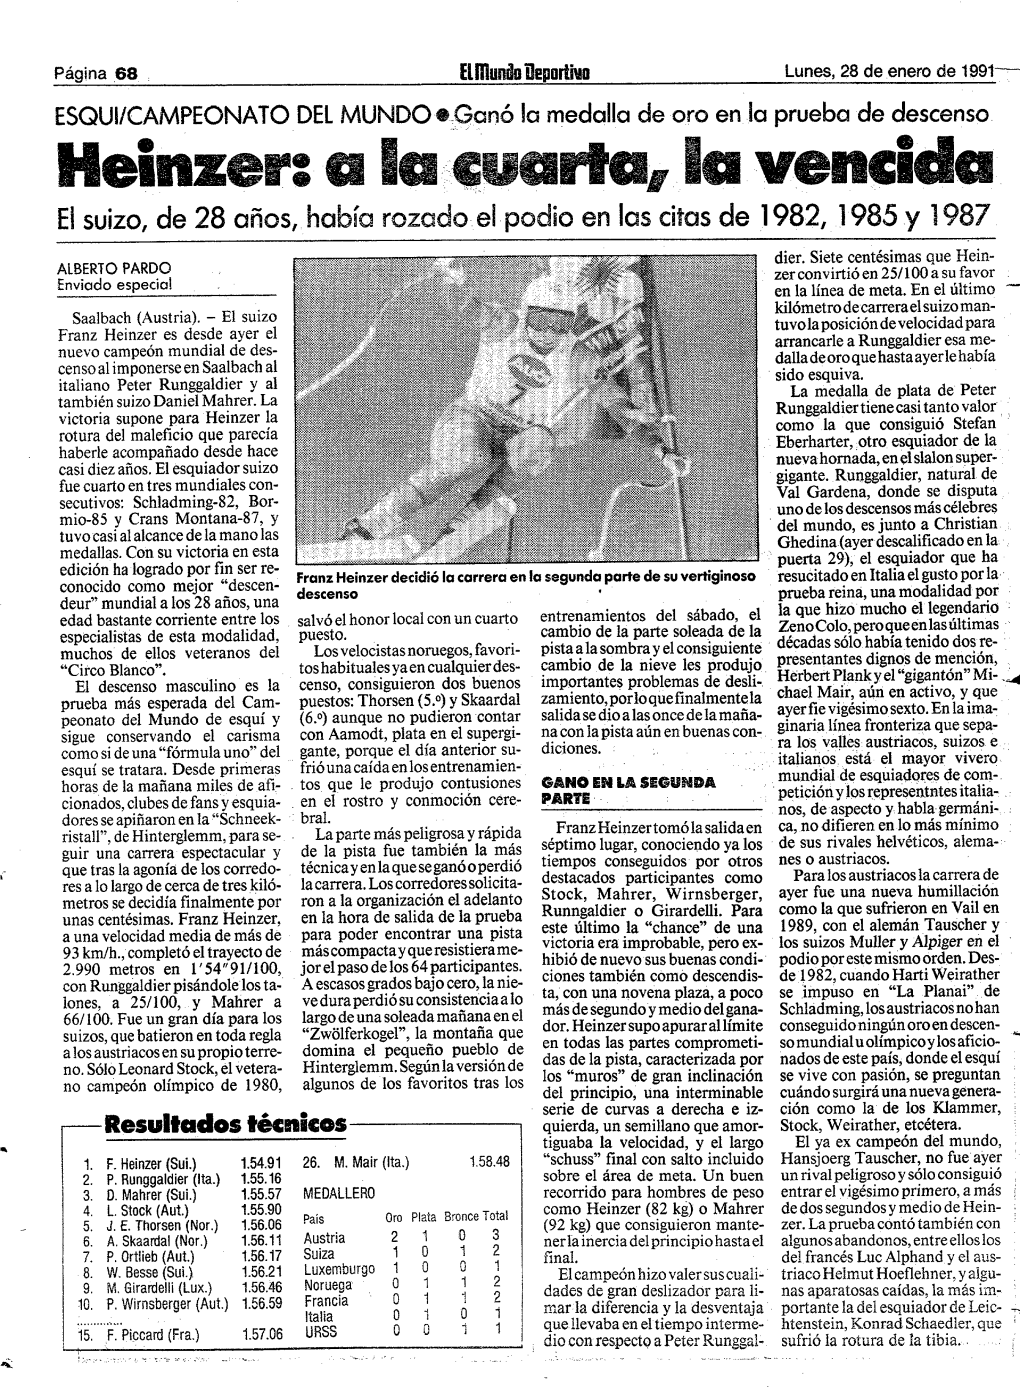 Heinzer: a Bu Iiuoa Bu Vencida El Suizo, De 28 Años, Había Rozado•..El• Podio En Las Citas De 1982,1985 .Y 1987